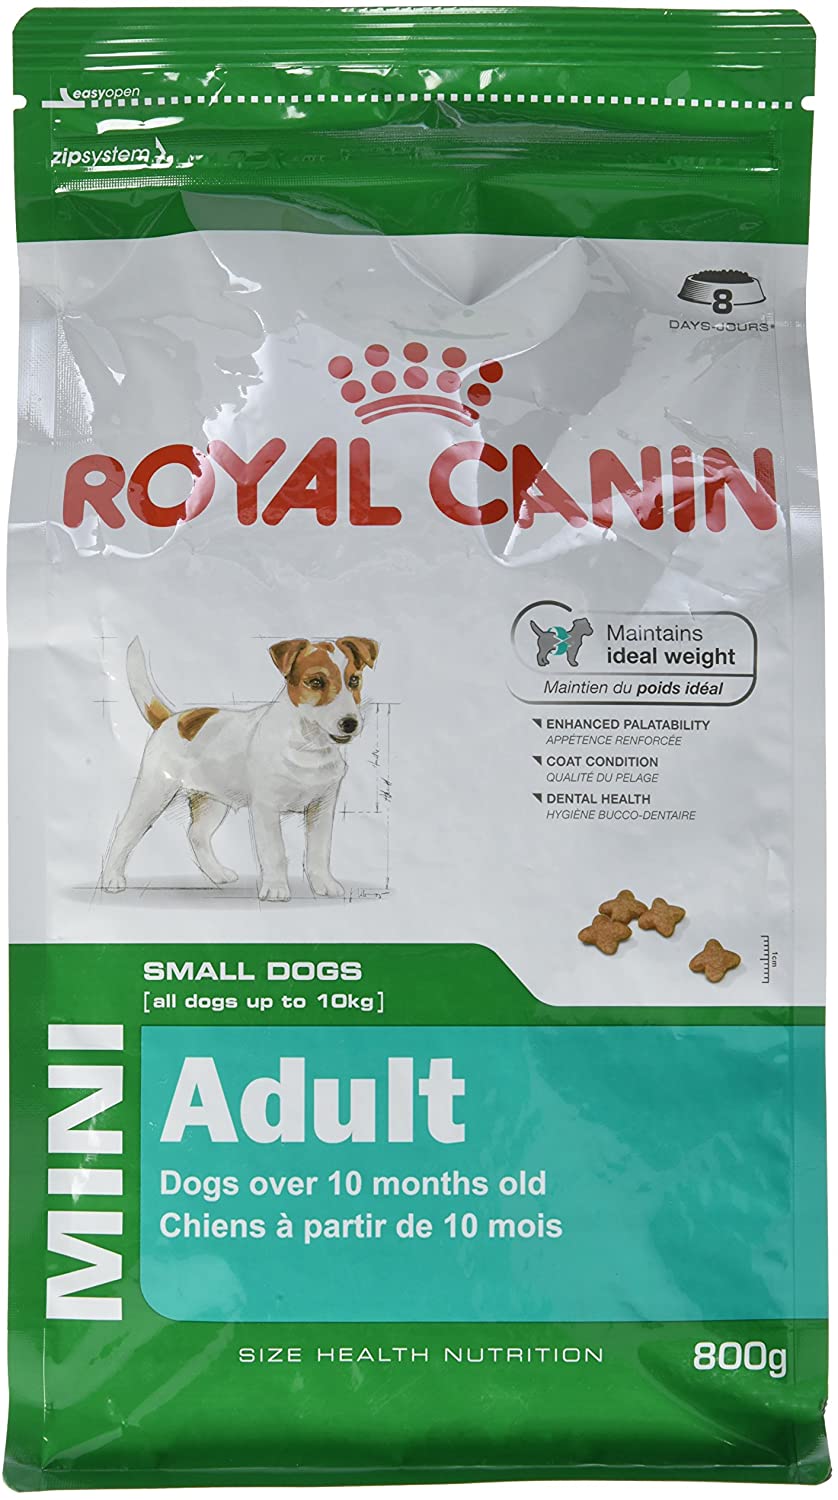  ROYAL CANIN - Alimento para Perros (0,8 kg) 